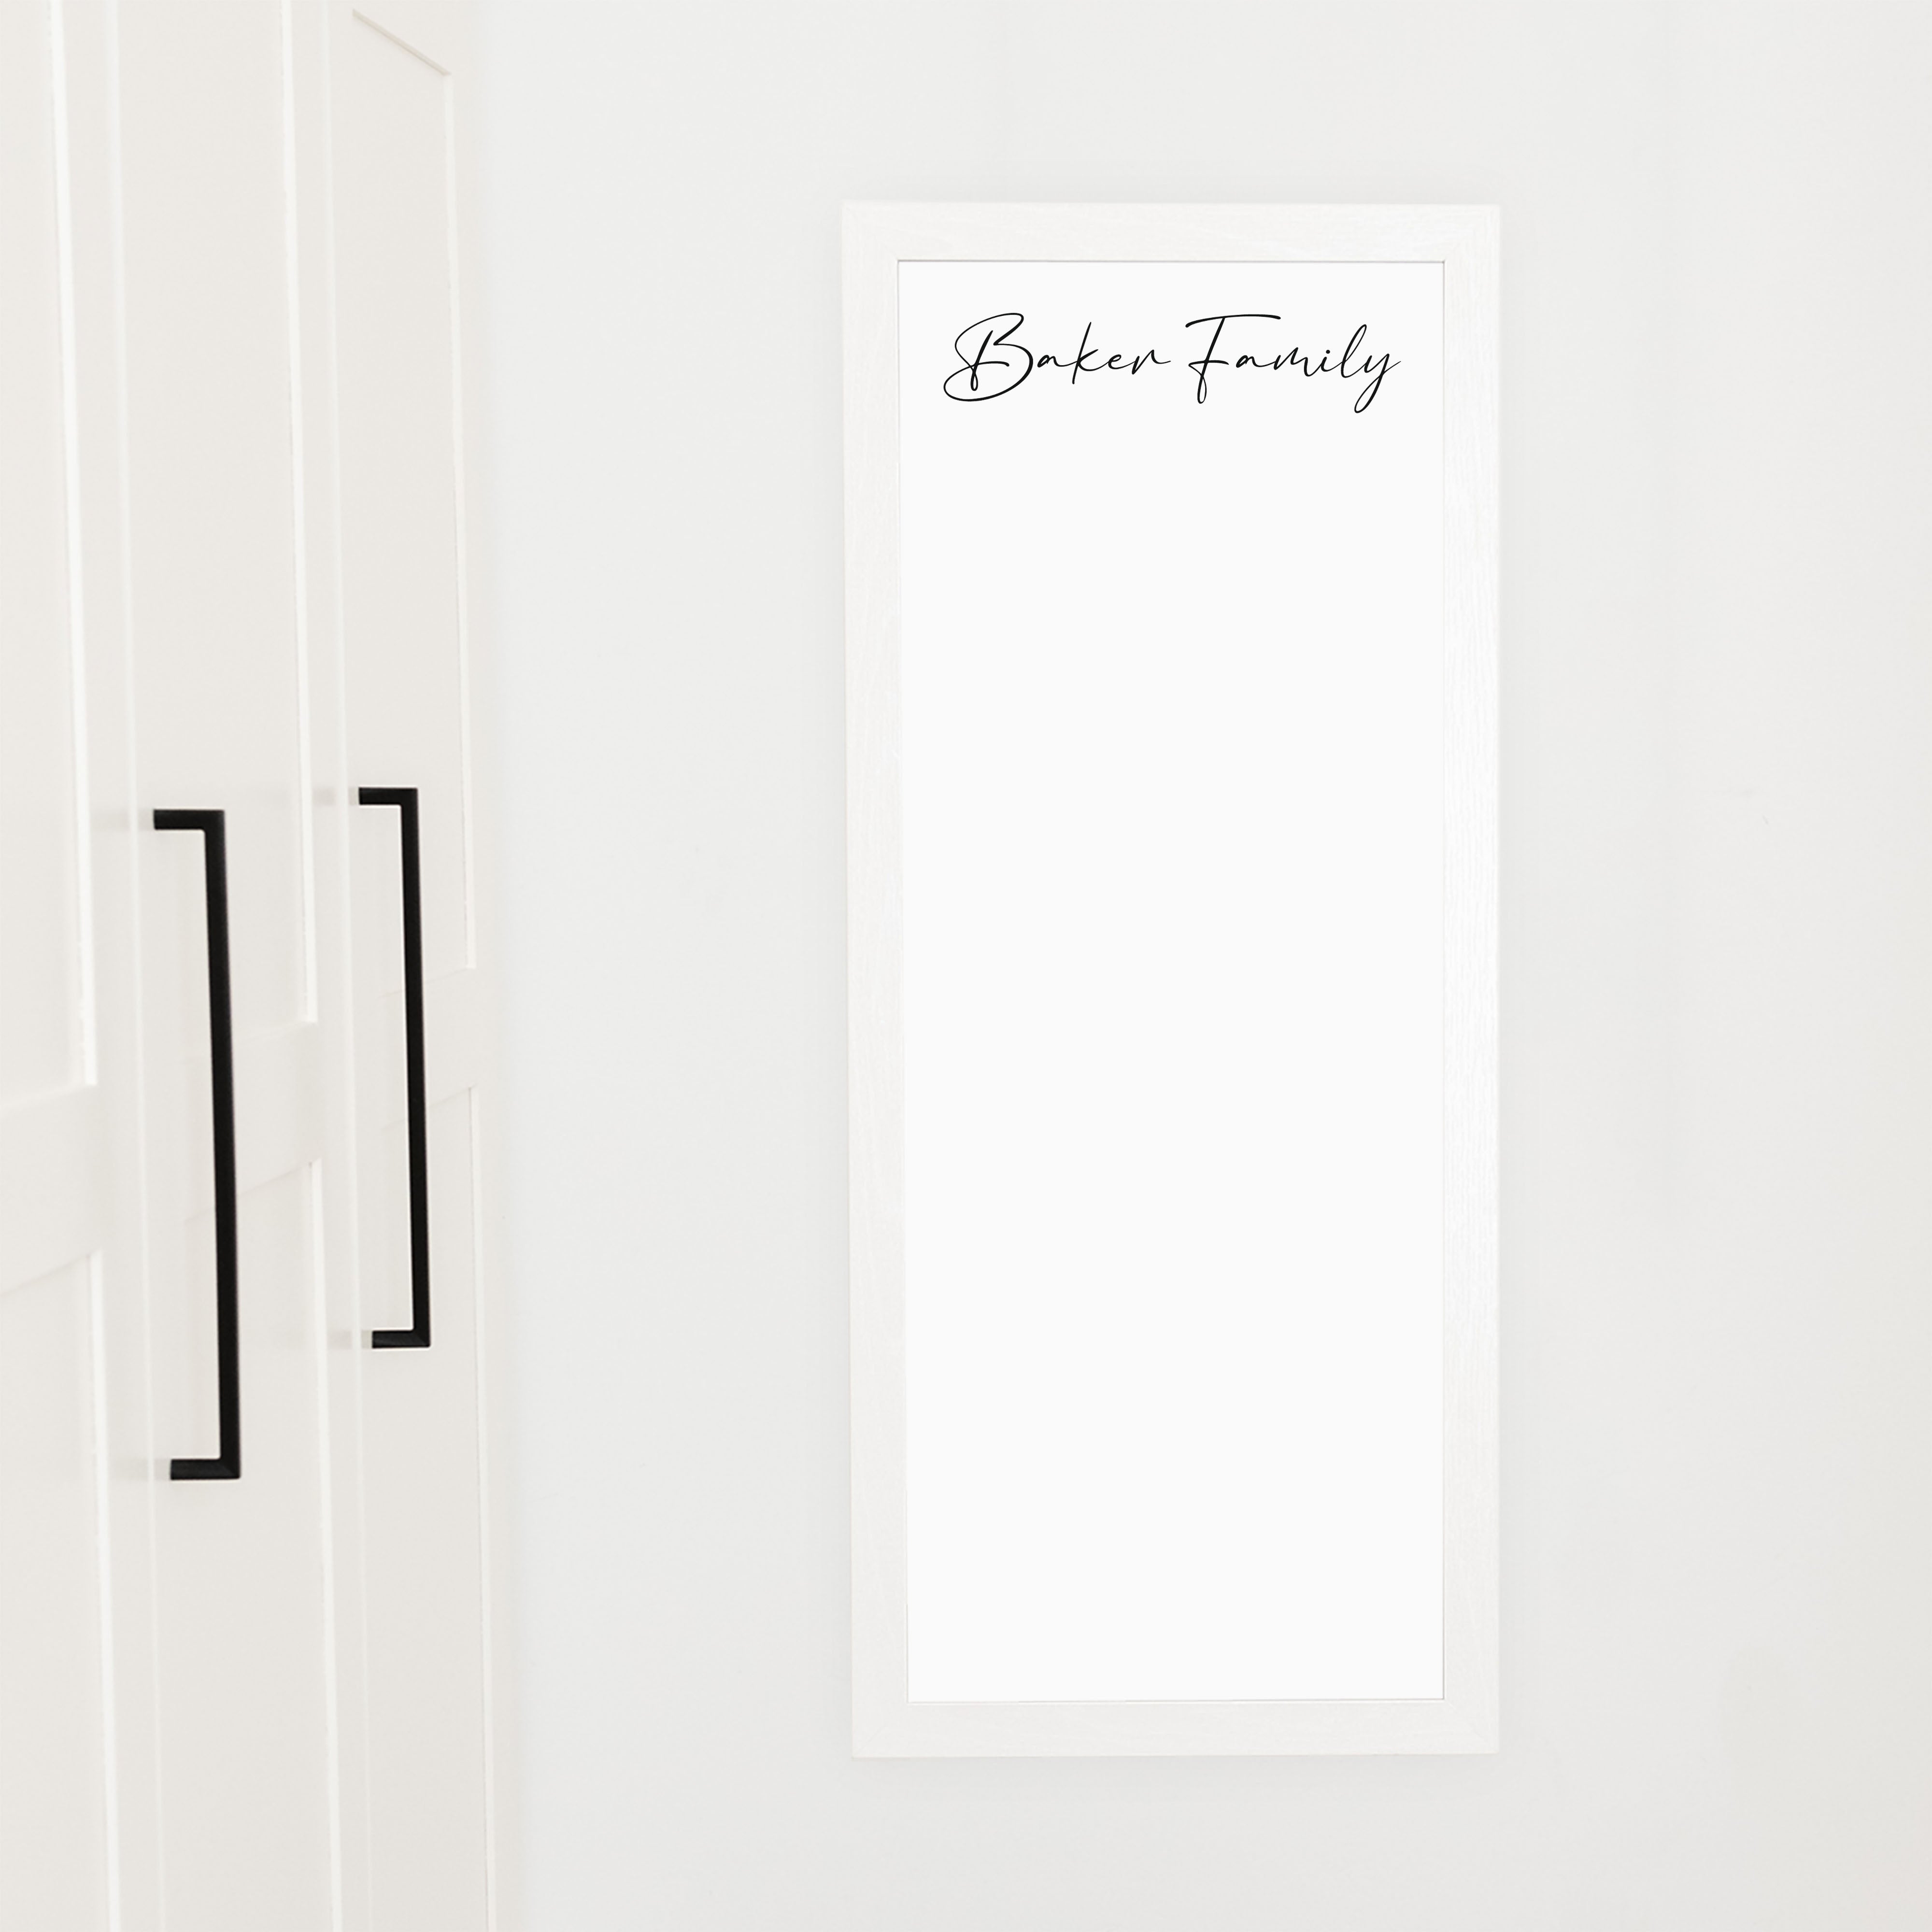 Slim Framed Whiteboard | Vertical Pennington